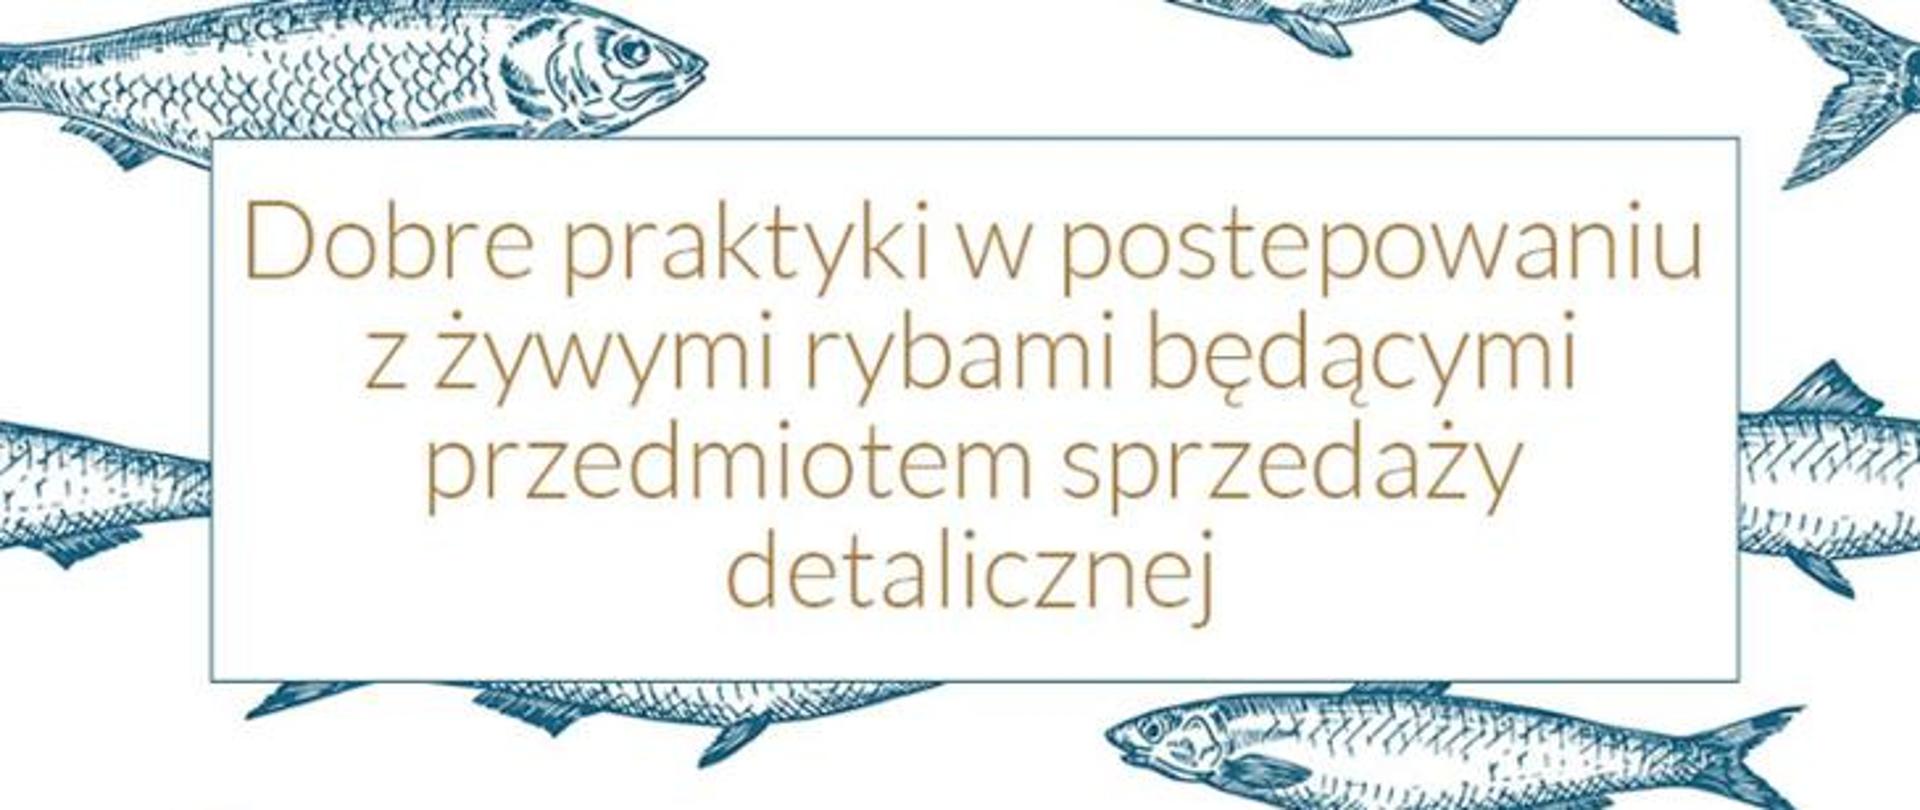 Napis:"Dobra praktyka w postępowaniu z żywymi rybami będącymi przedmiotem sprzedaży detalicznej" na tle grafik z rybami